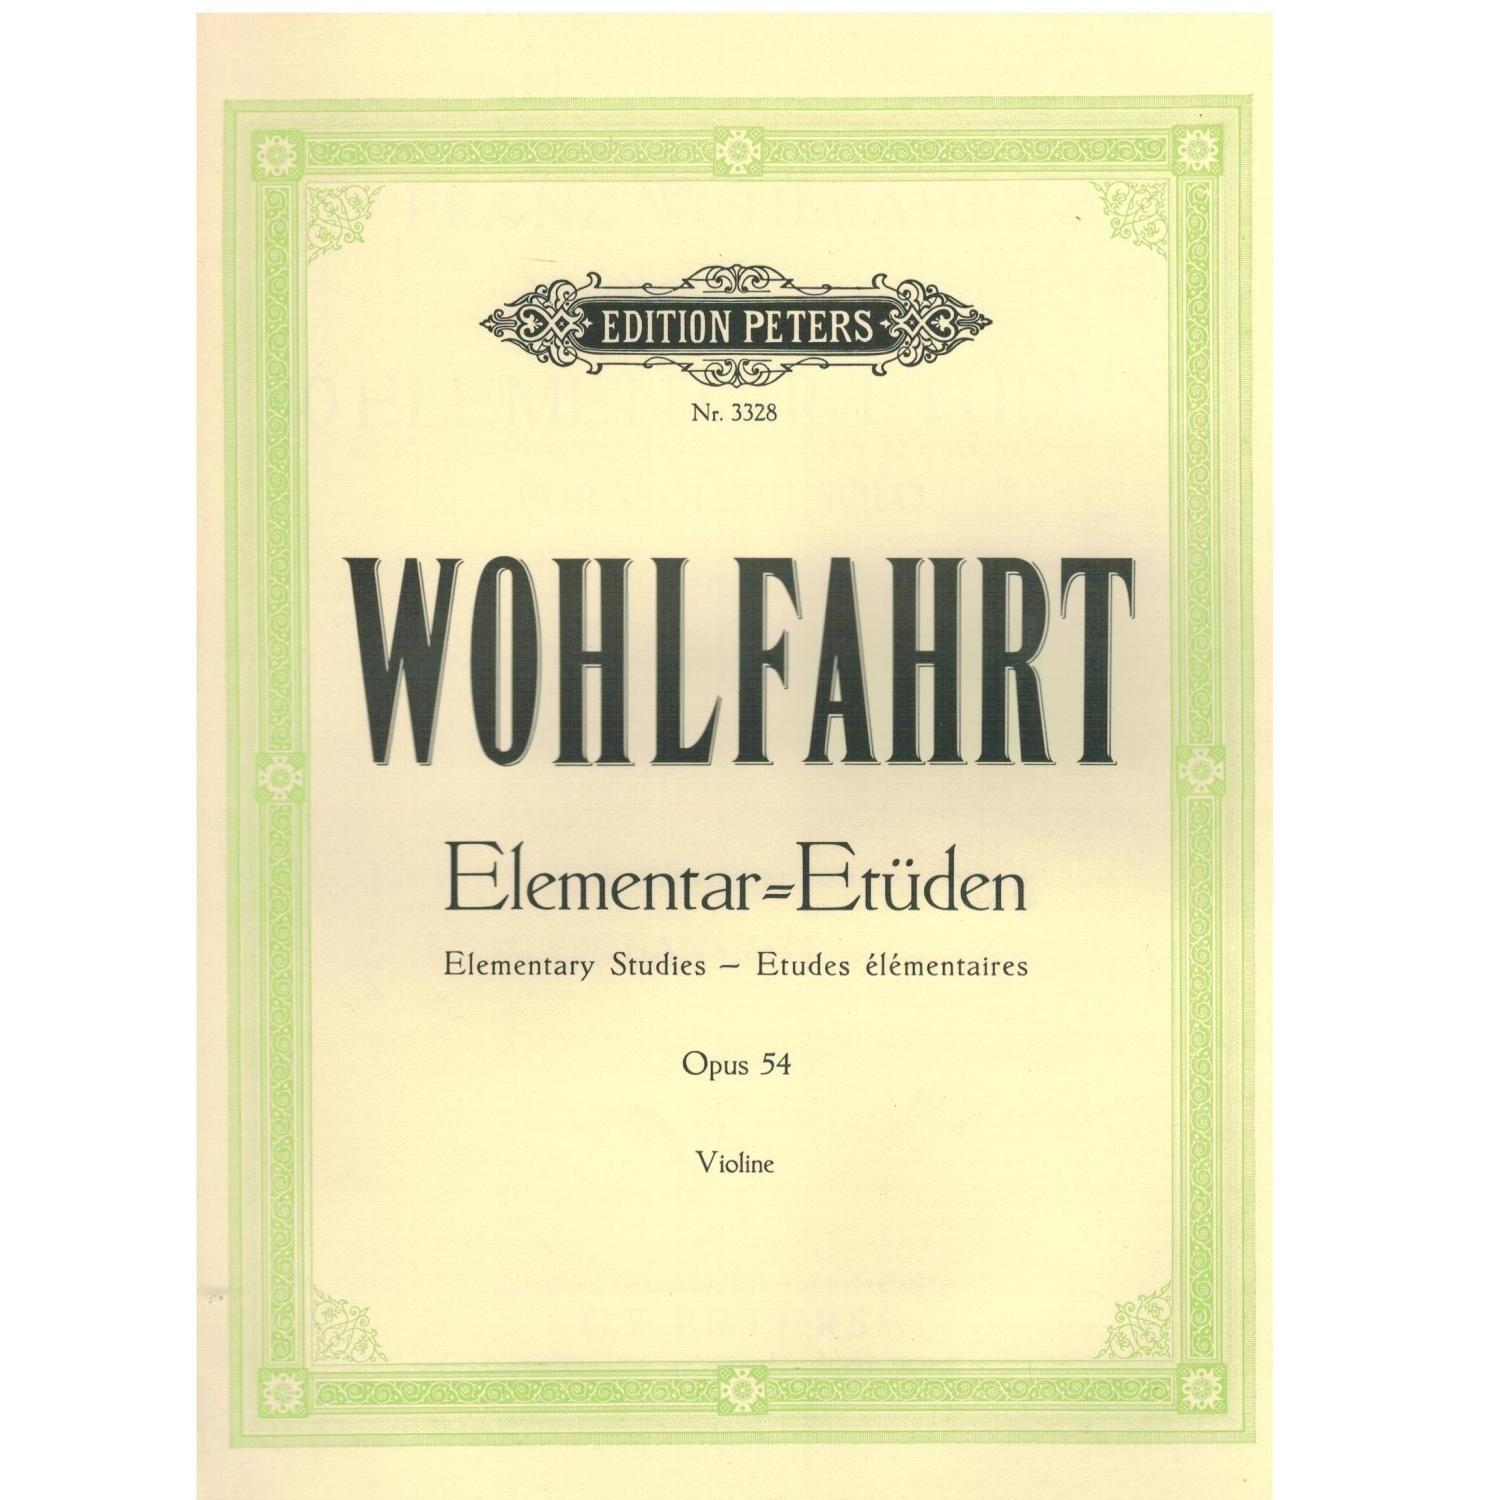 Wohlfahrt Elementar - Etuden Opus 54 Violine - Edition Peters